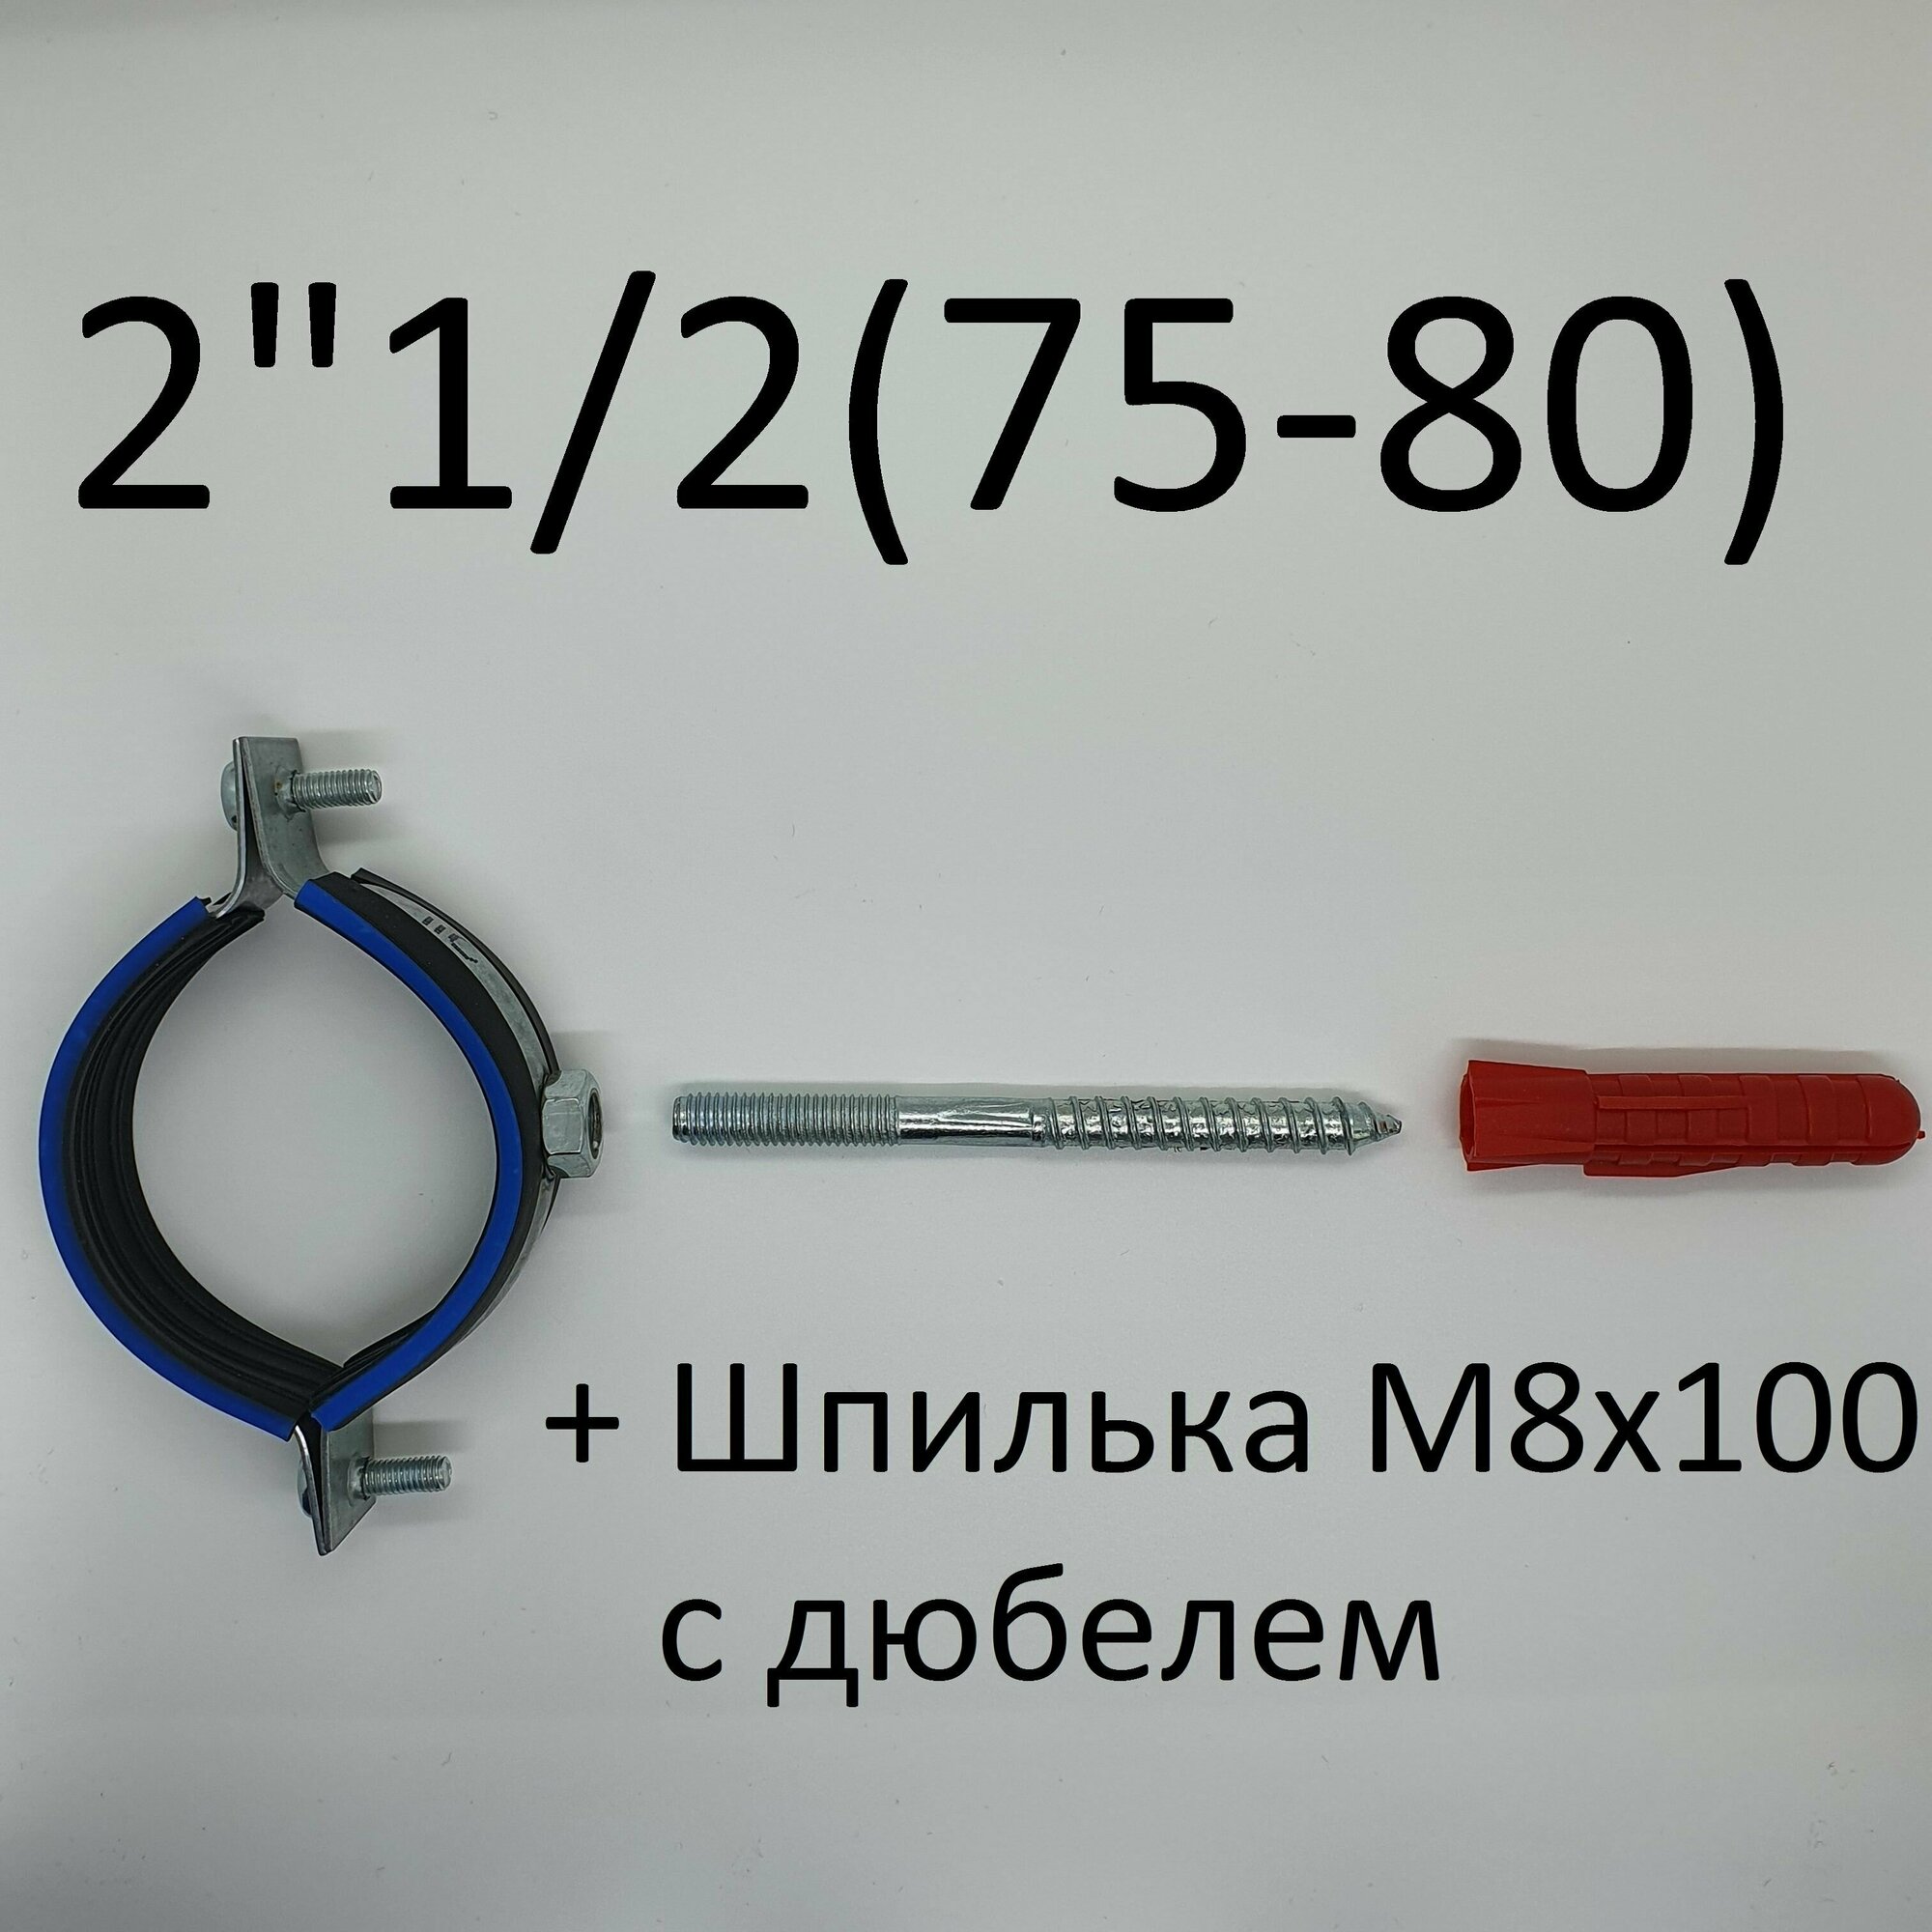 Хомут сантехнический трубный с гайкой 2 1/2" (75-80) (1 шт)